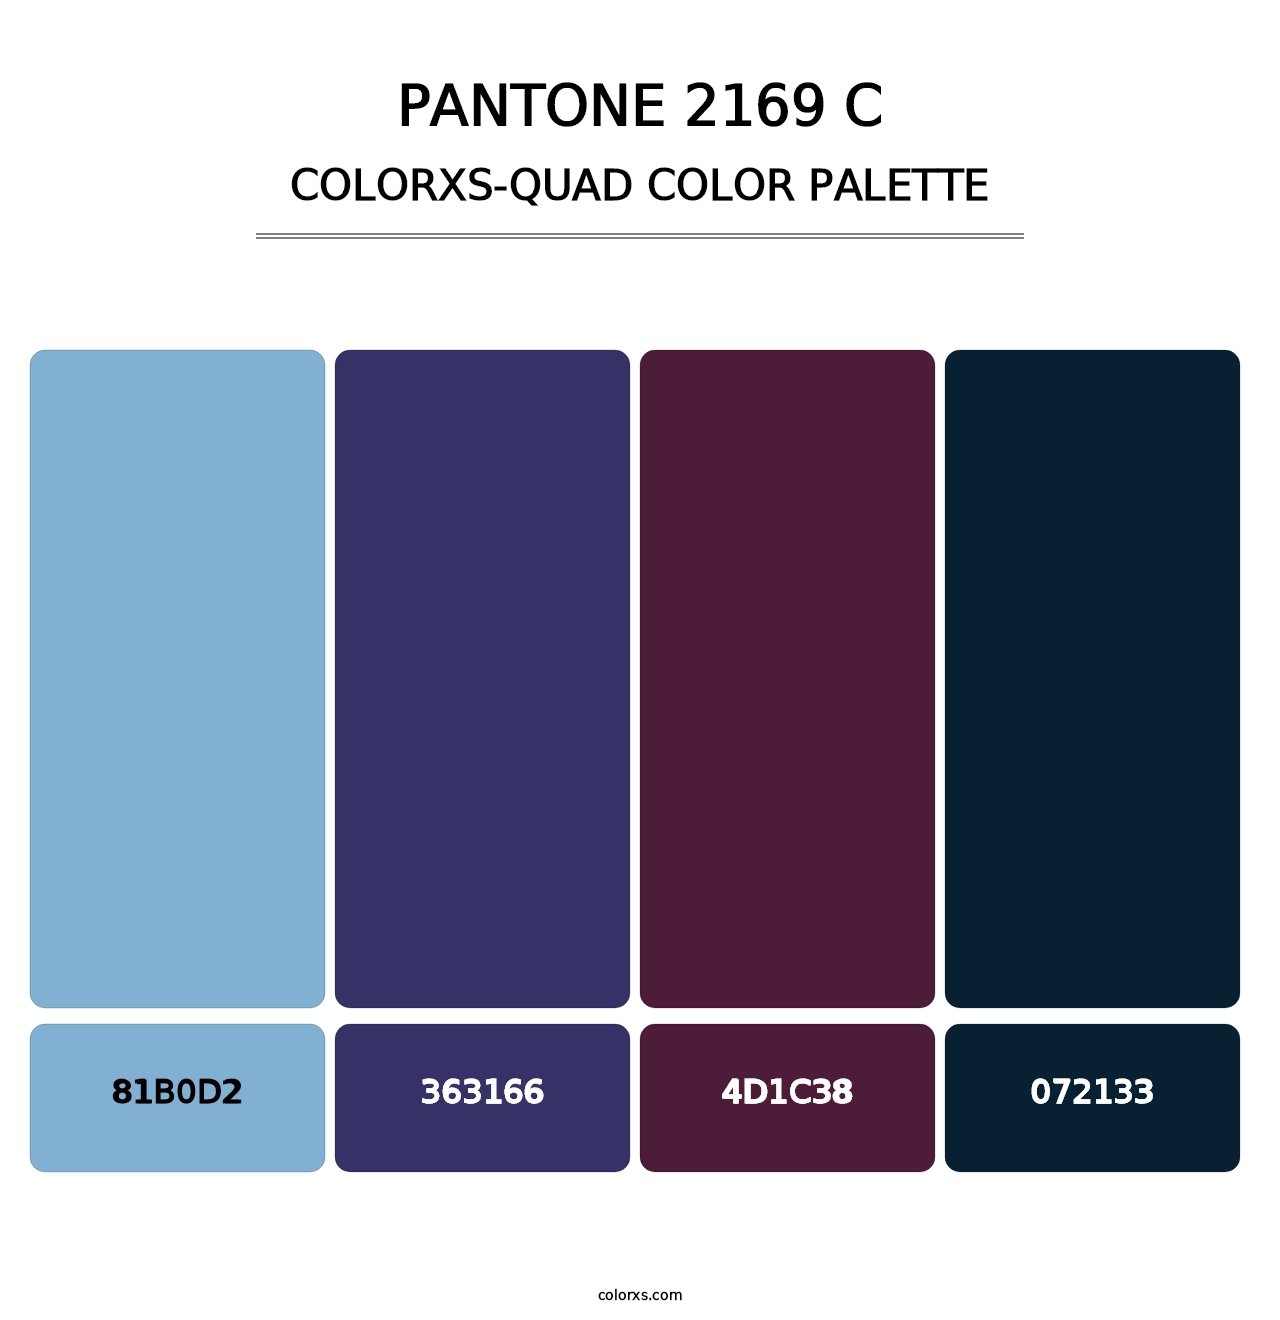 PANTONE 2169 C - Colorxs Quad Palette